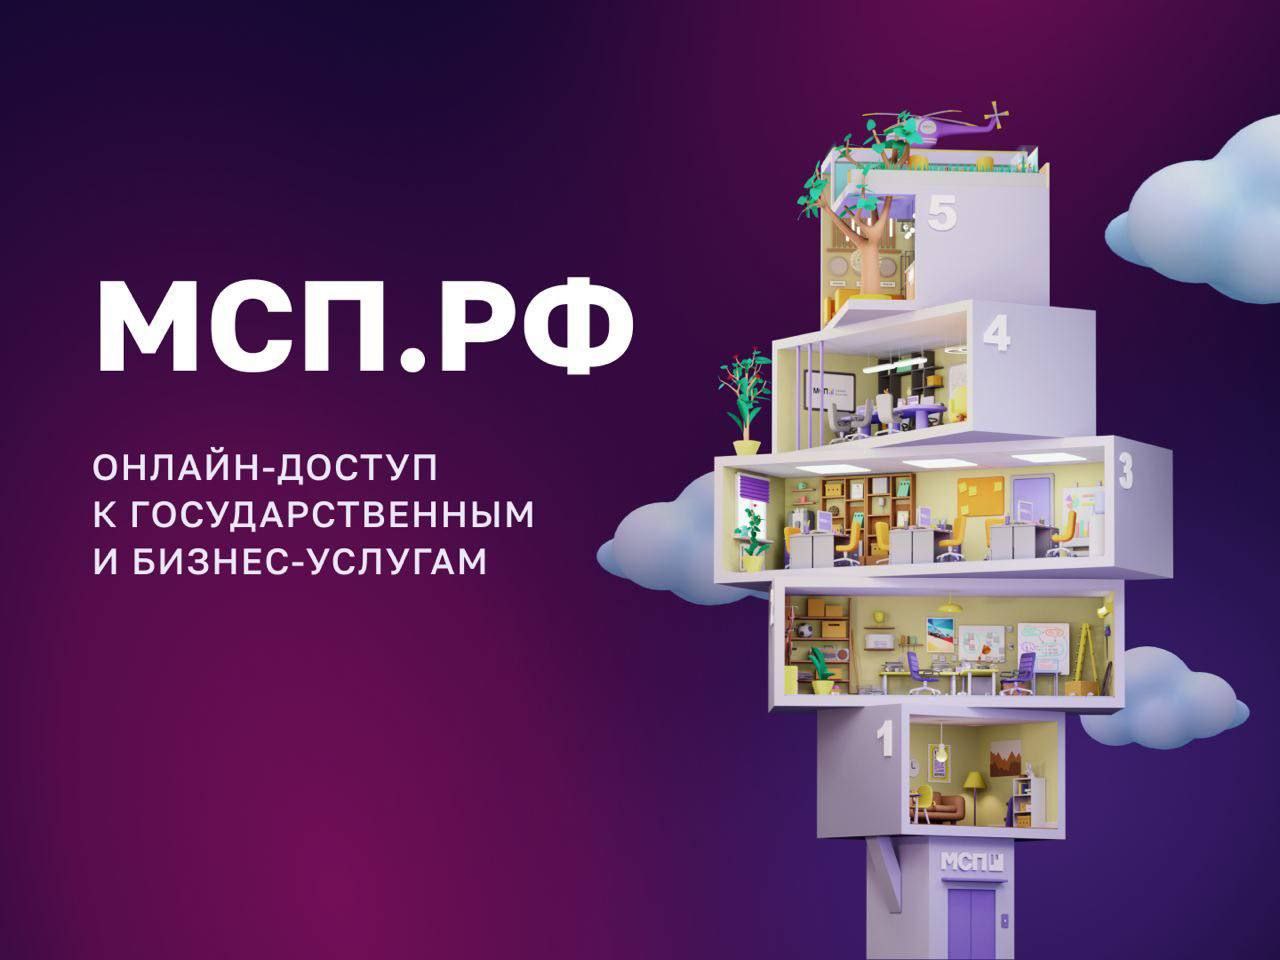 С начала года около 8,5 млрд рублей привлекли малые и средние предприятия семи приграничных регионов под «Зонтичные» поручительства Корпорации МСП.